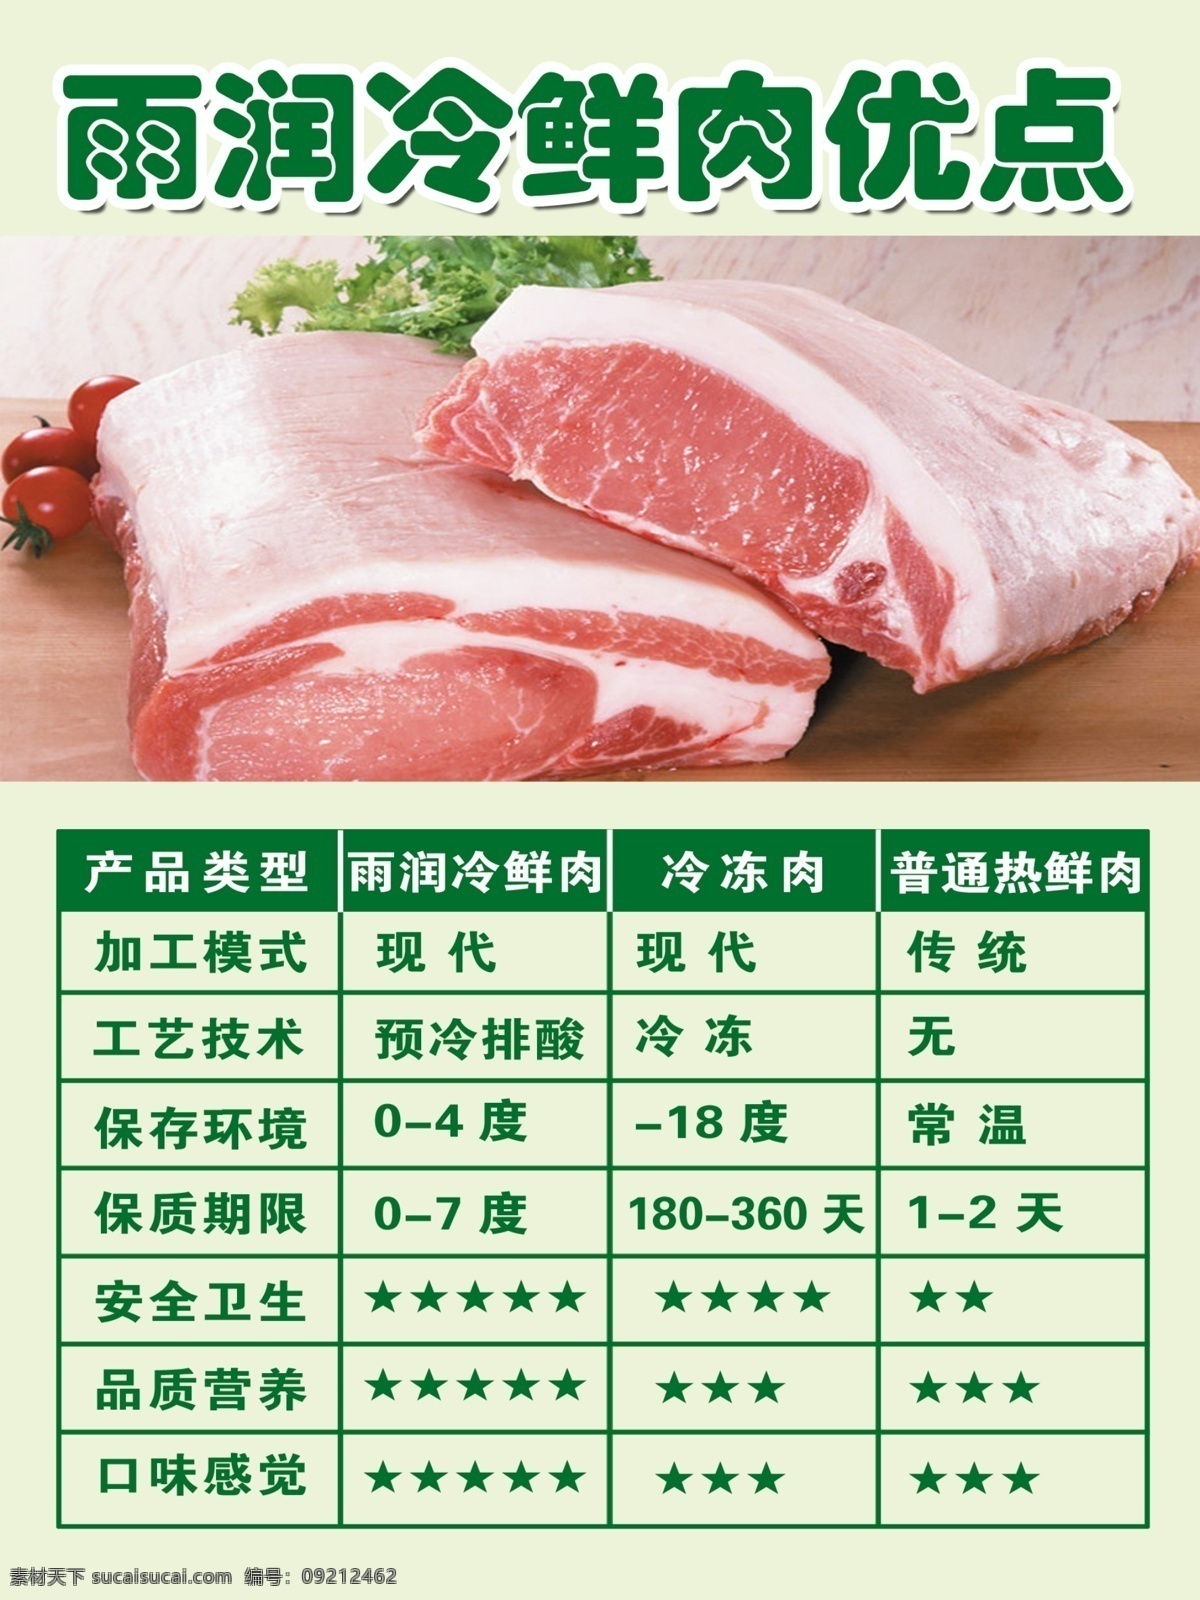 冷鲜肉海报 雨润 冷鲜肉 猪肉 火锅材料 新鲜 看 得到 健康食品 海报 优点 dm宣传单 广告设计模板 源文件